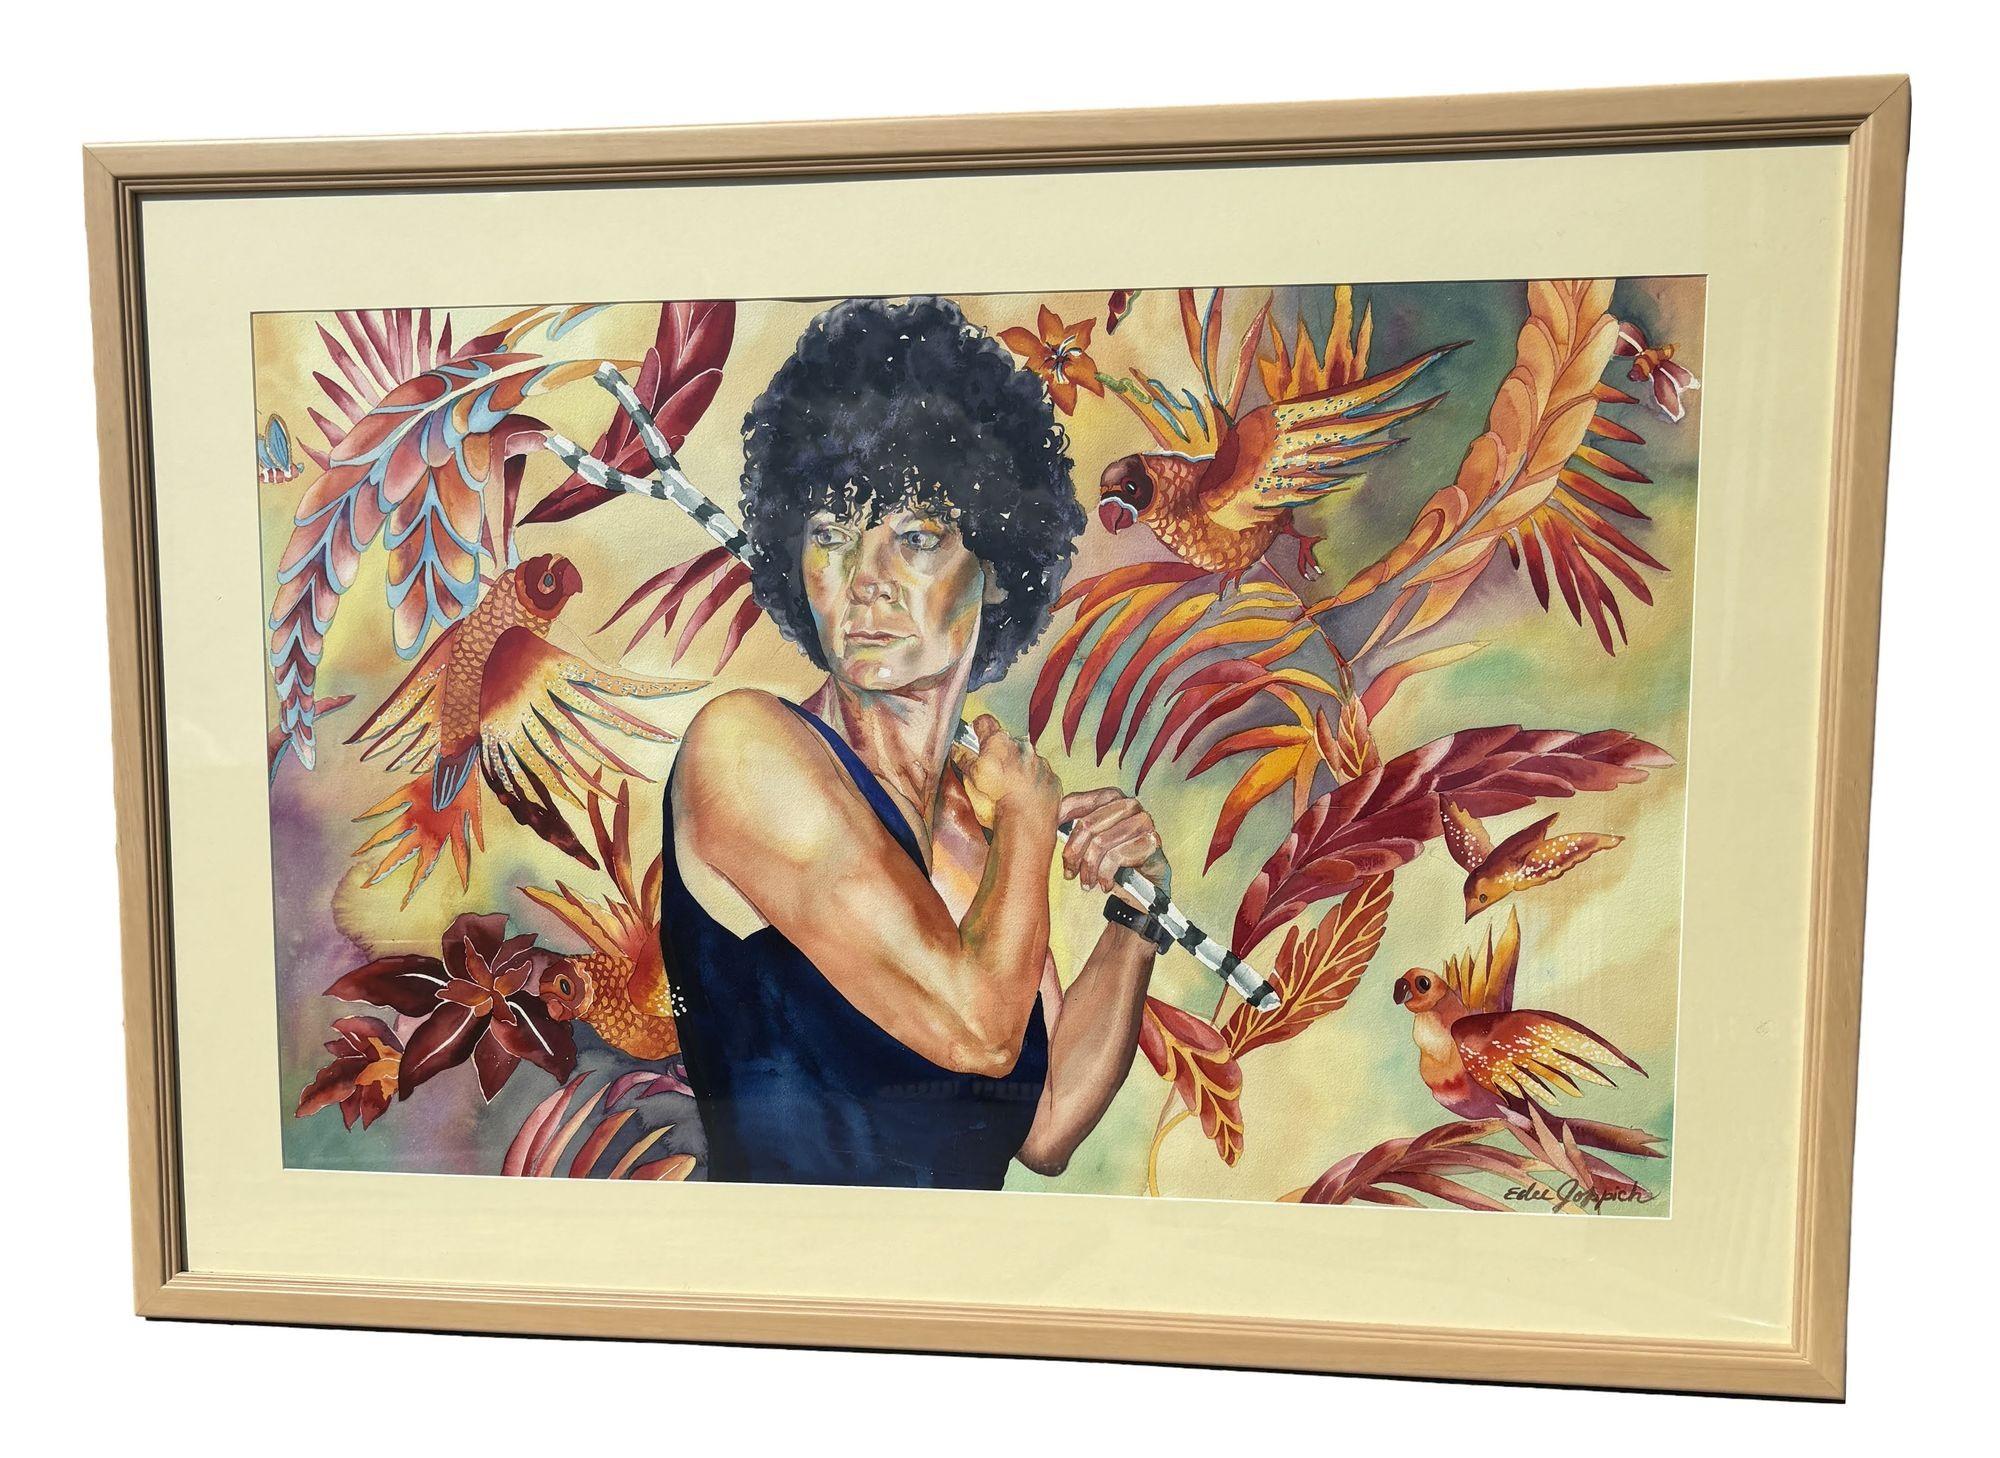 Portrait original à l'aquarelle sur papier signé par Edee Joppich représentant une femme en justaucorps sur un fond multicolore avec des aras multicolores l'entourant.

Livré dans le cadre d'origine de la galerie.

Edee Joppich, artiste chevronnée,